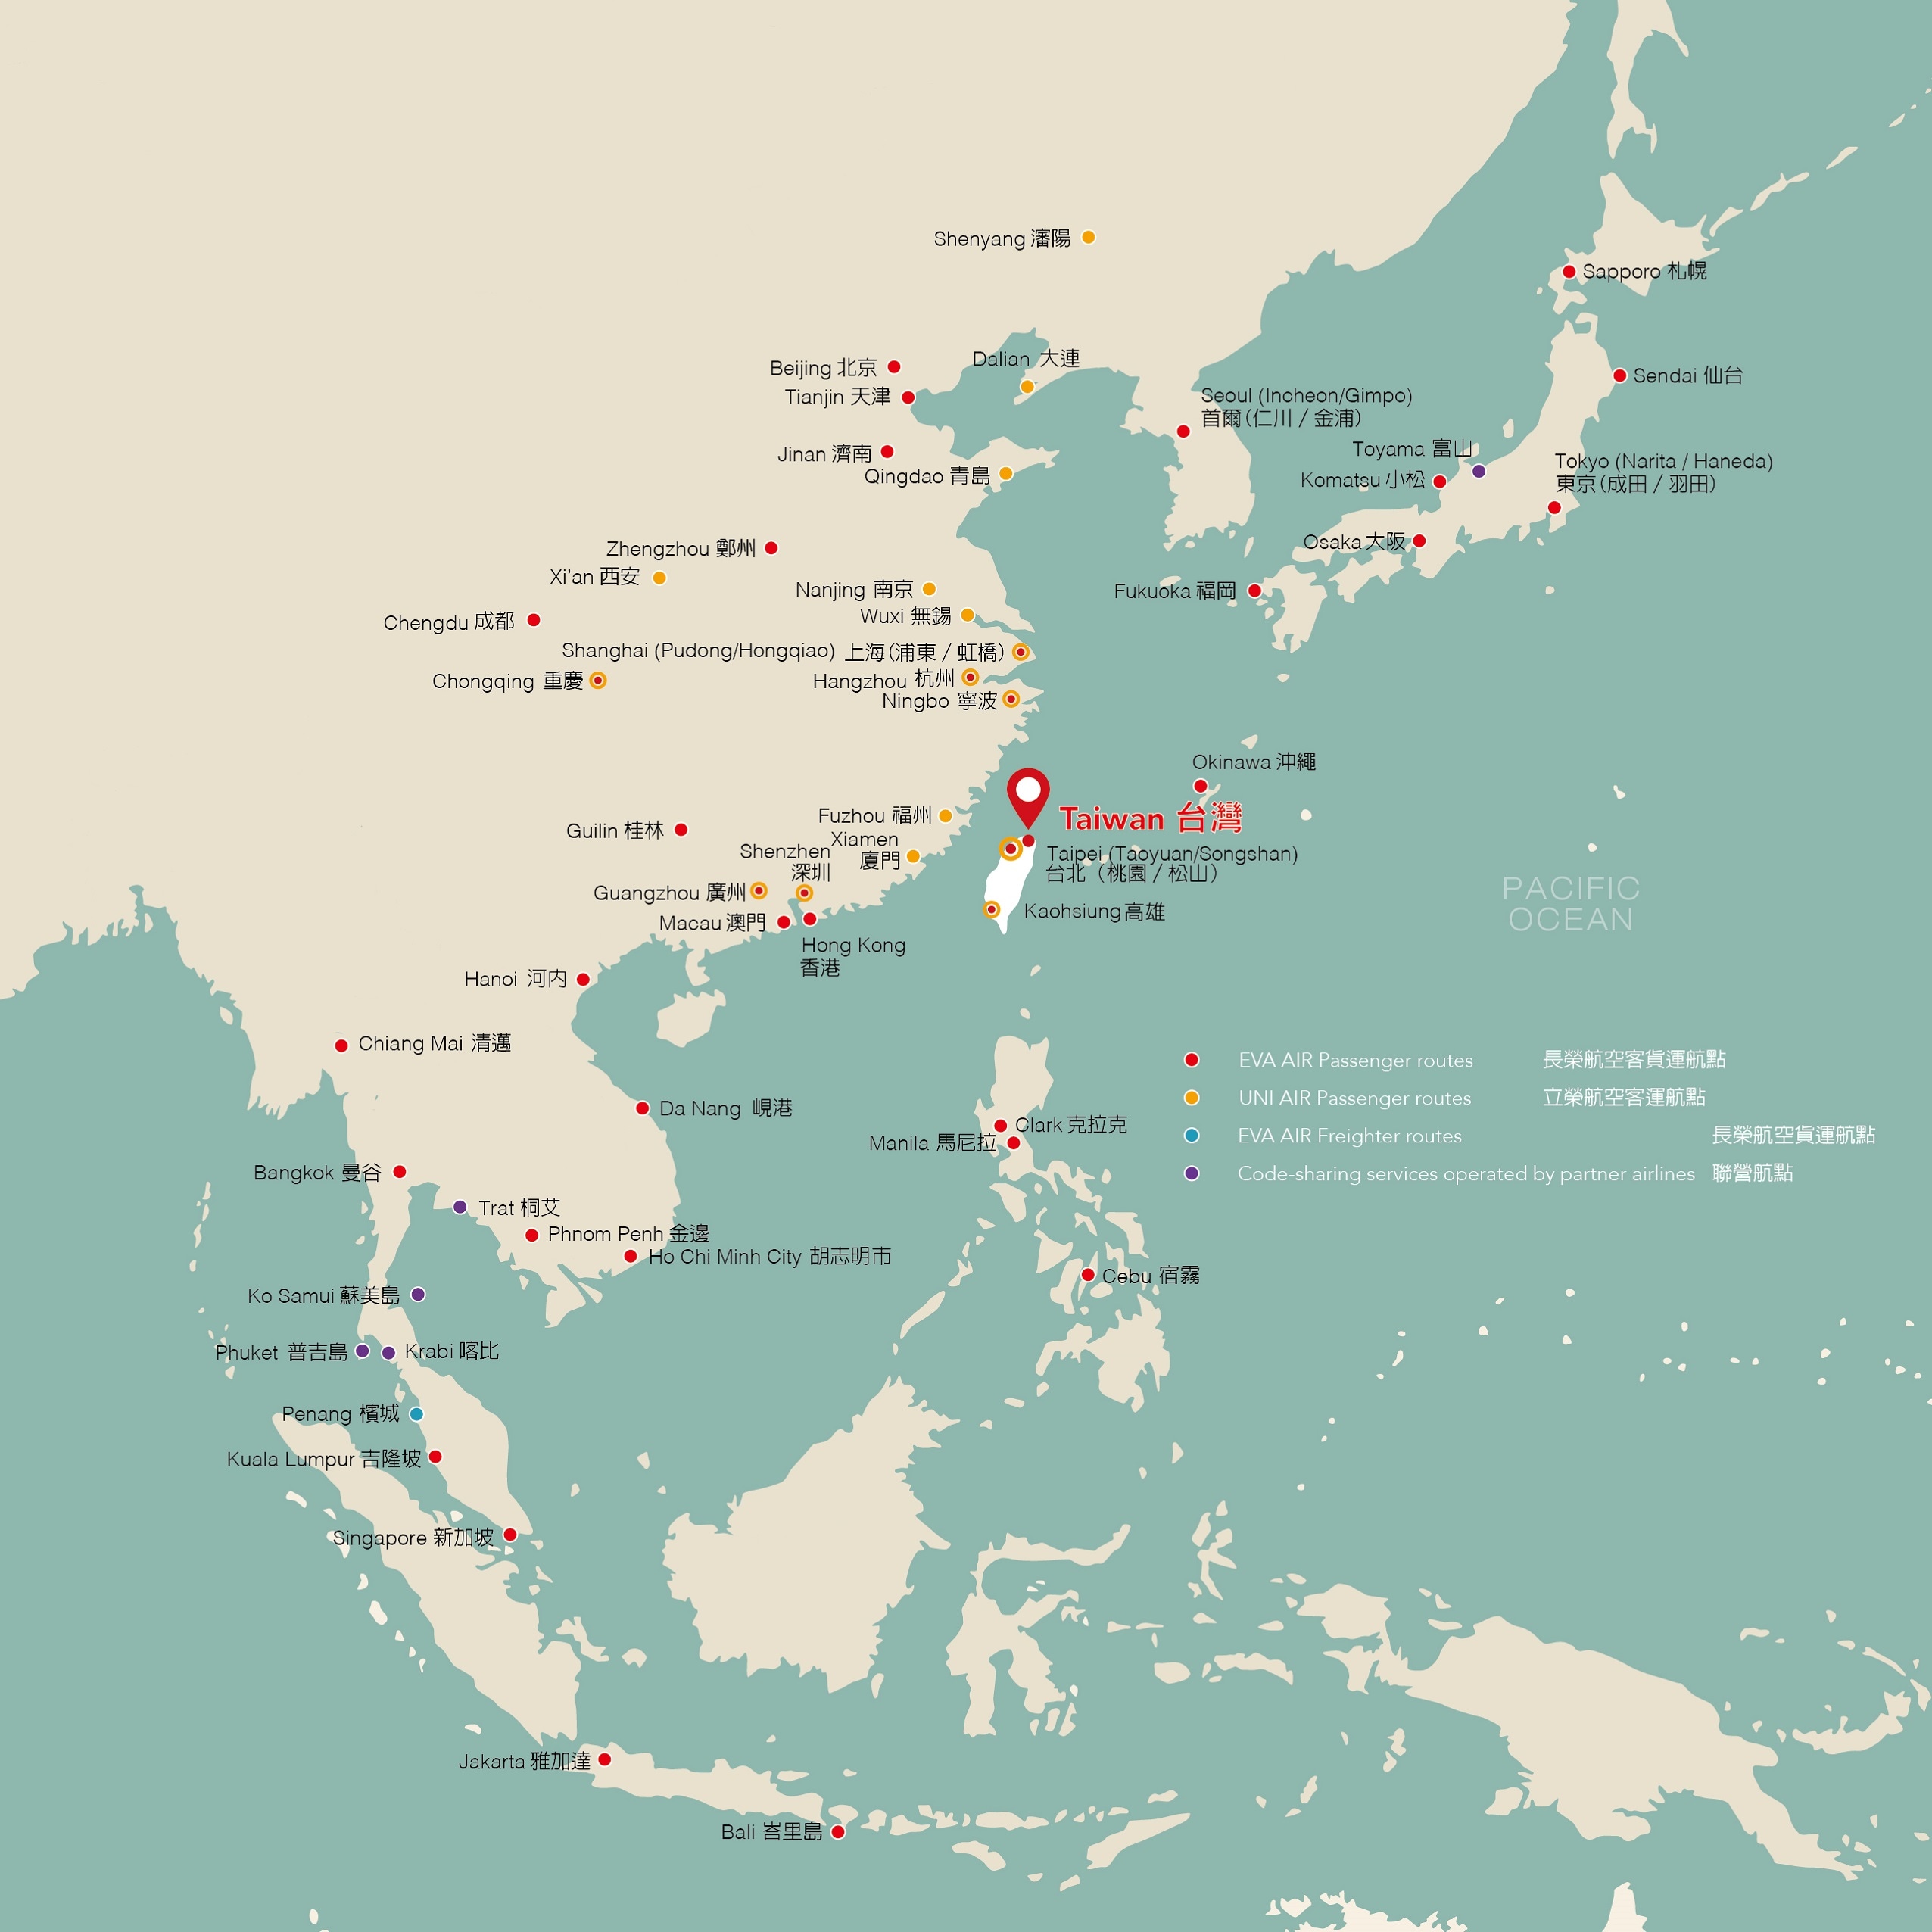 亞洲區域飛航路線圖